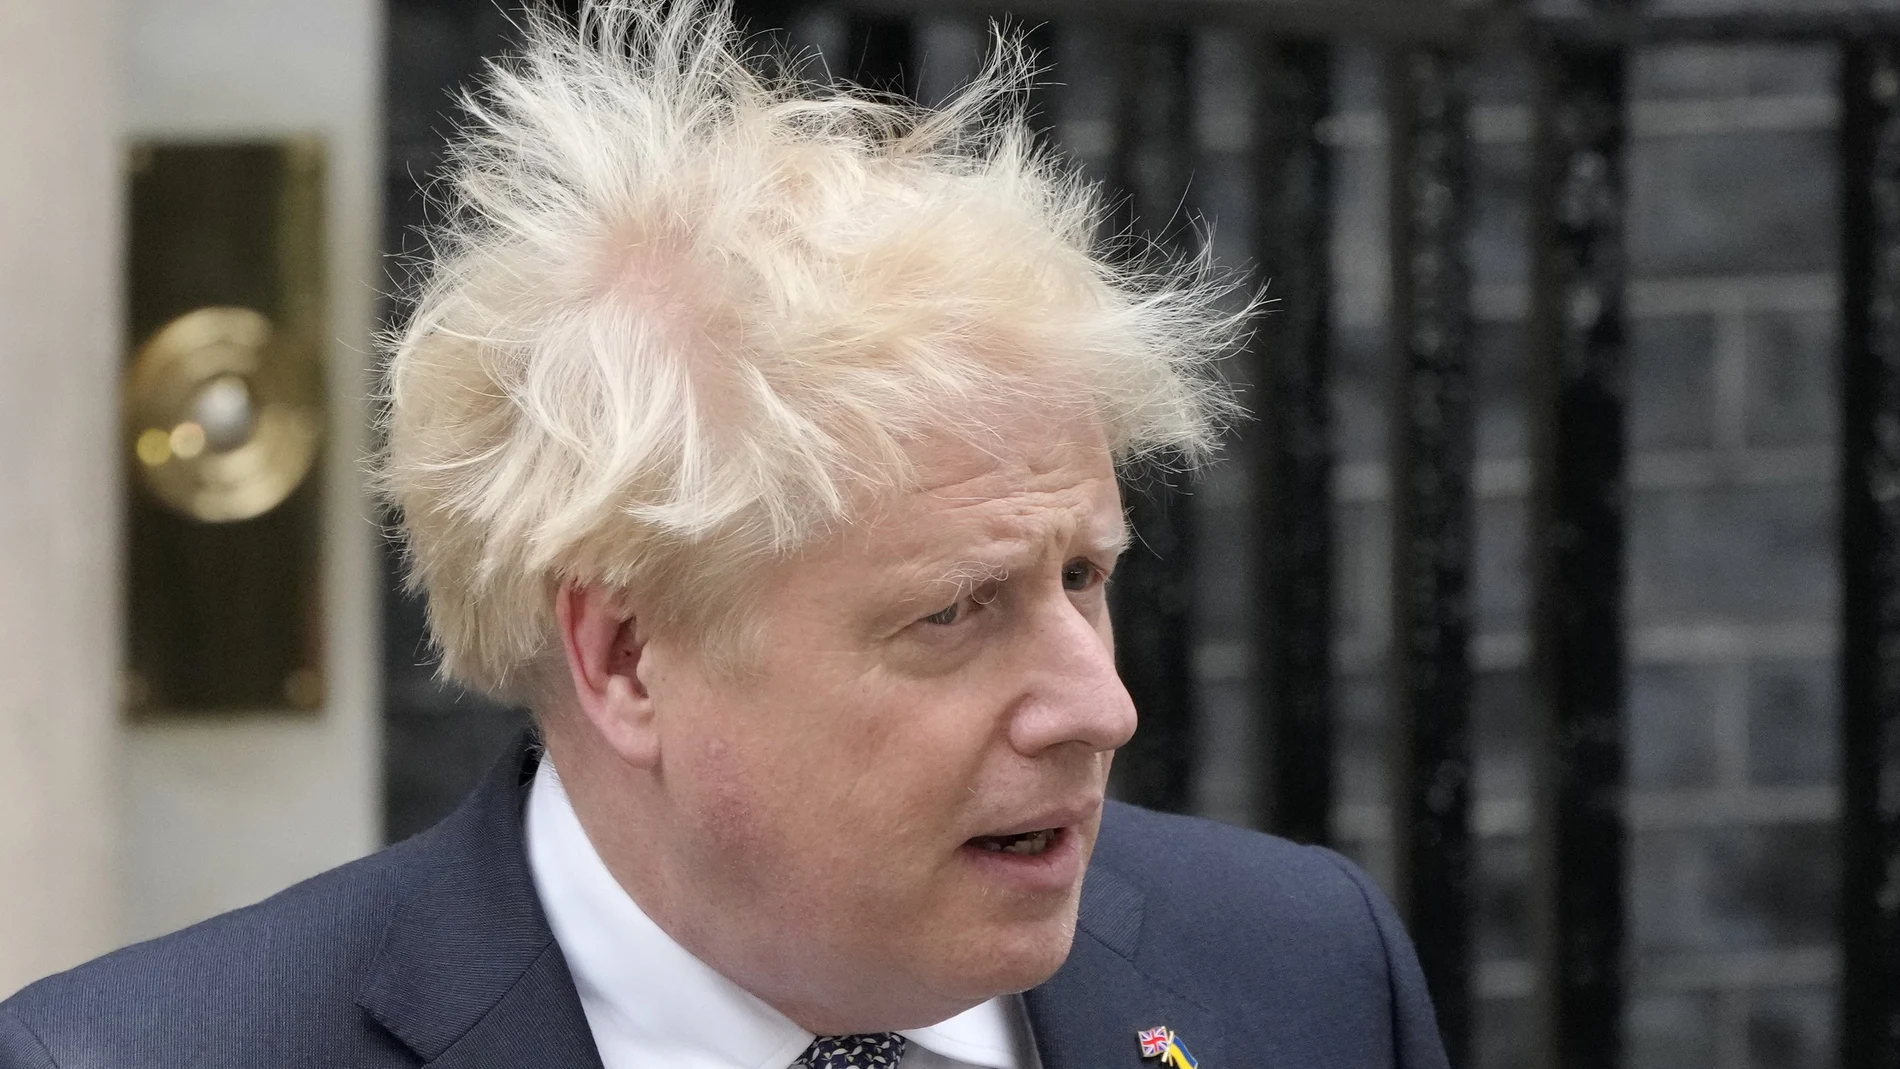 Boris Johnson ante el número 10 de Downing Street, London durante su anuncio de dimisión